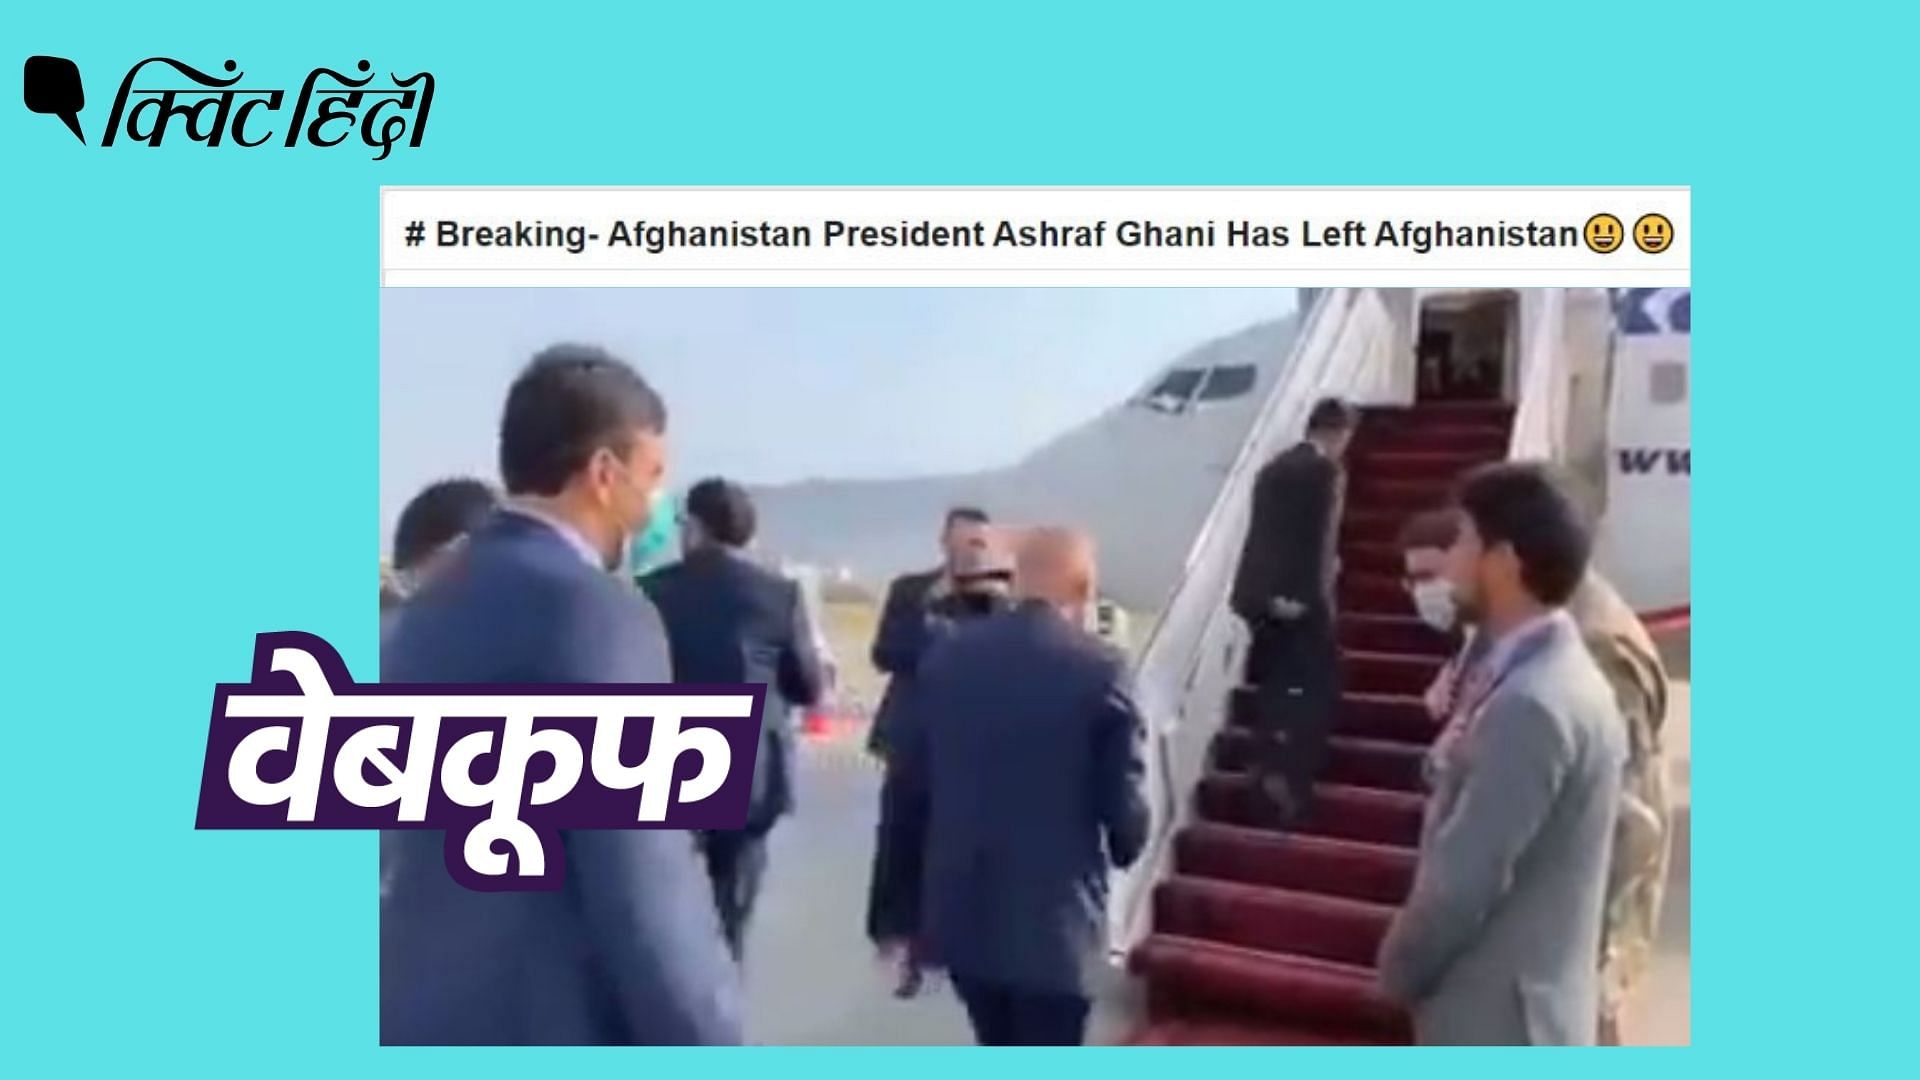 <div class="paragraphs"><p>वायरल वीडियो जुलाई का है, जब Afghanistan के राष्ट्रपति उज्बेकिस्तान की दो दिवसीय यात्रा पर थे</p></div>